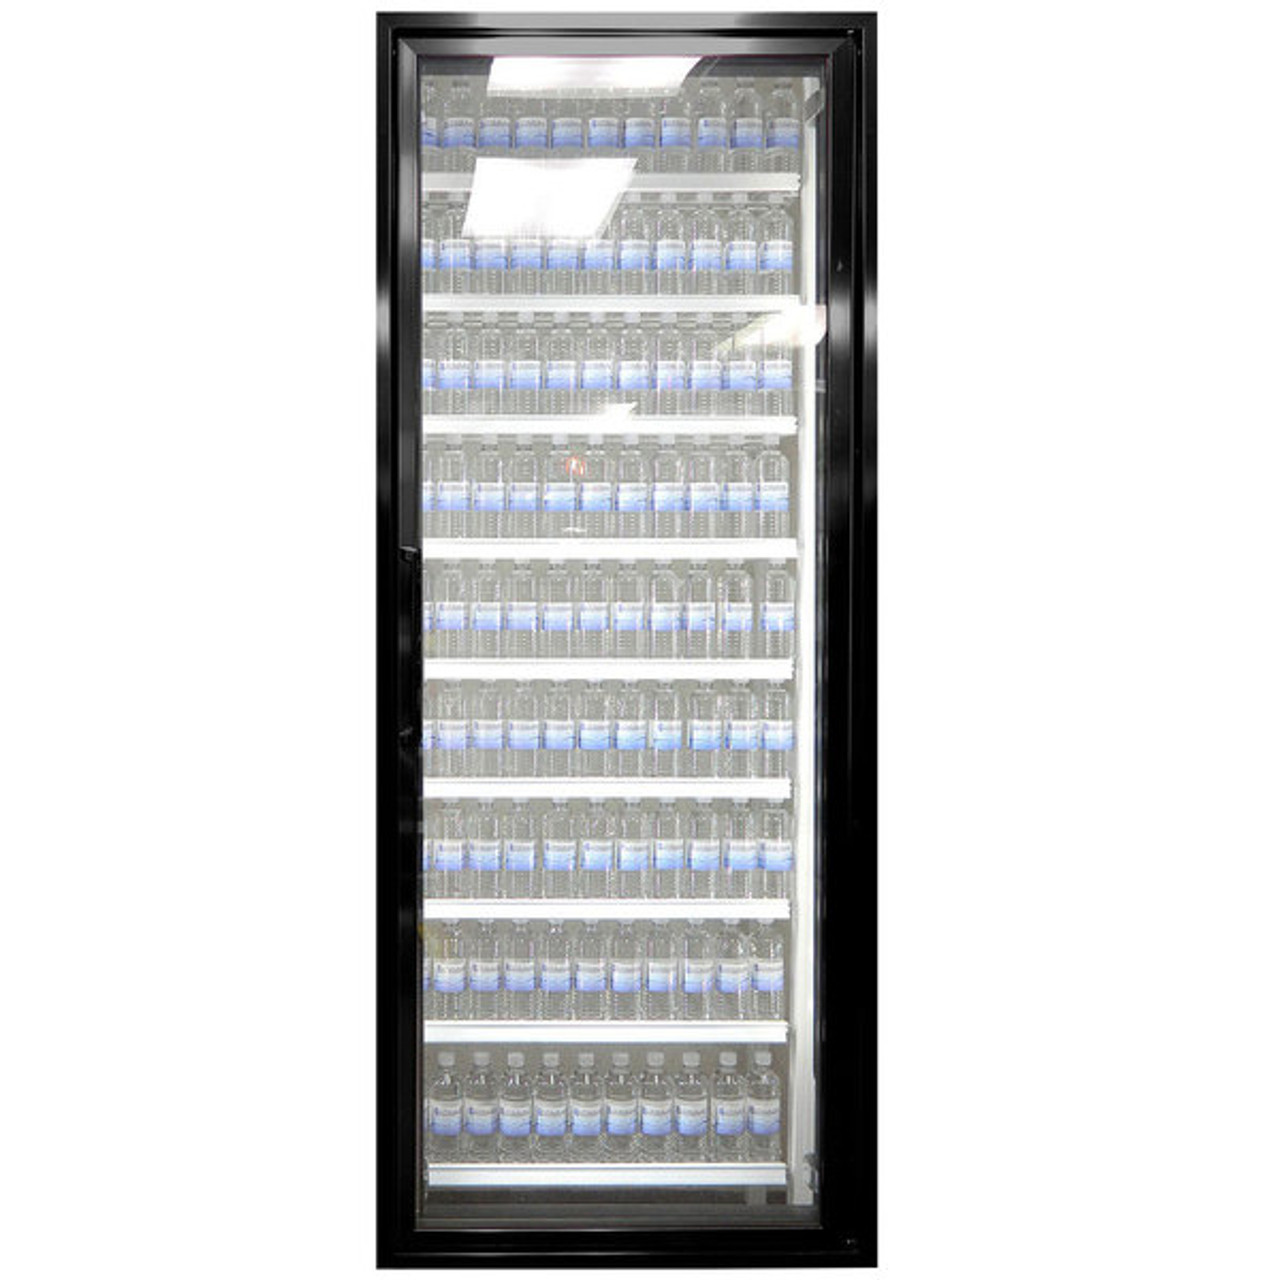 Classic Plus 26" x 72" Walk-In Freezer Merchandiser Door with Shelving - Satin Black, Right Hinge-Styleline CL2672-LT 